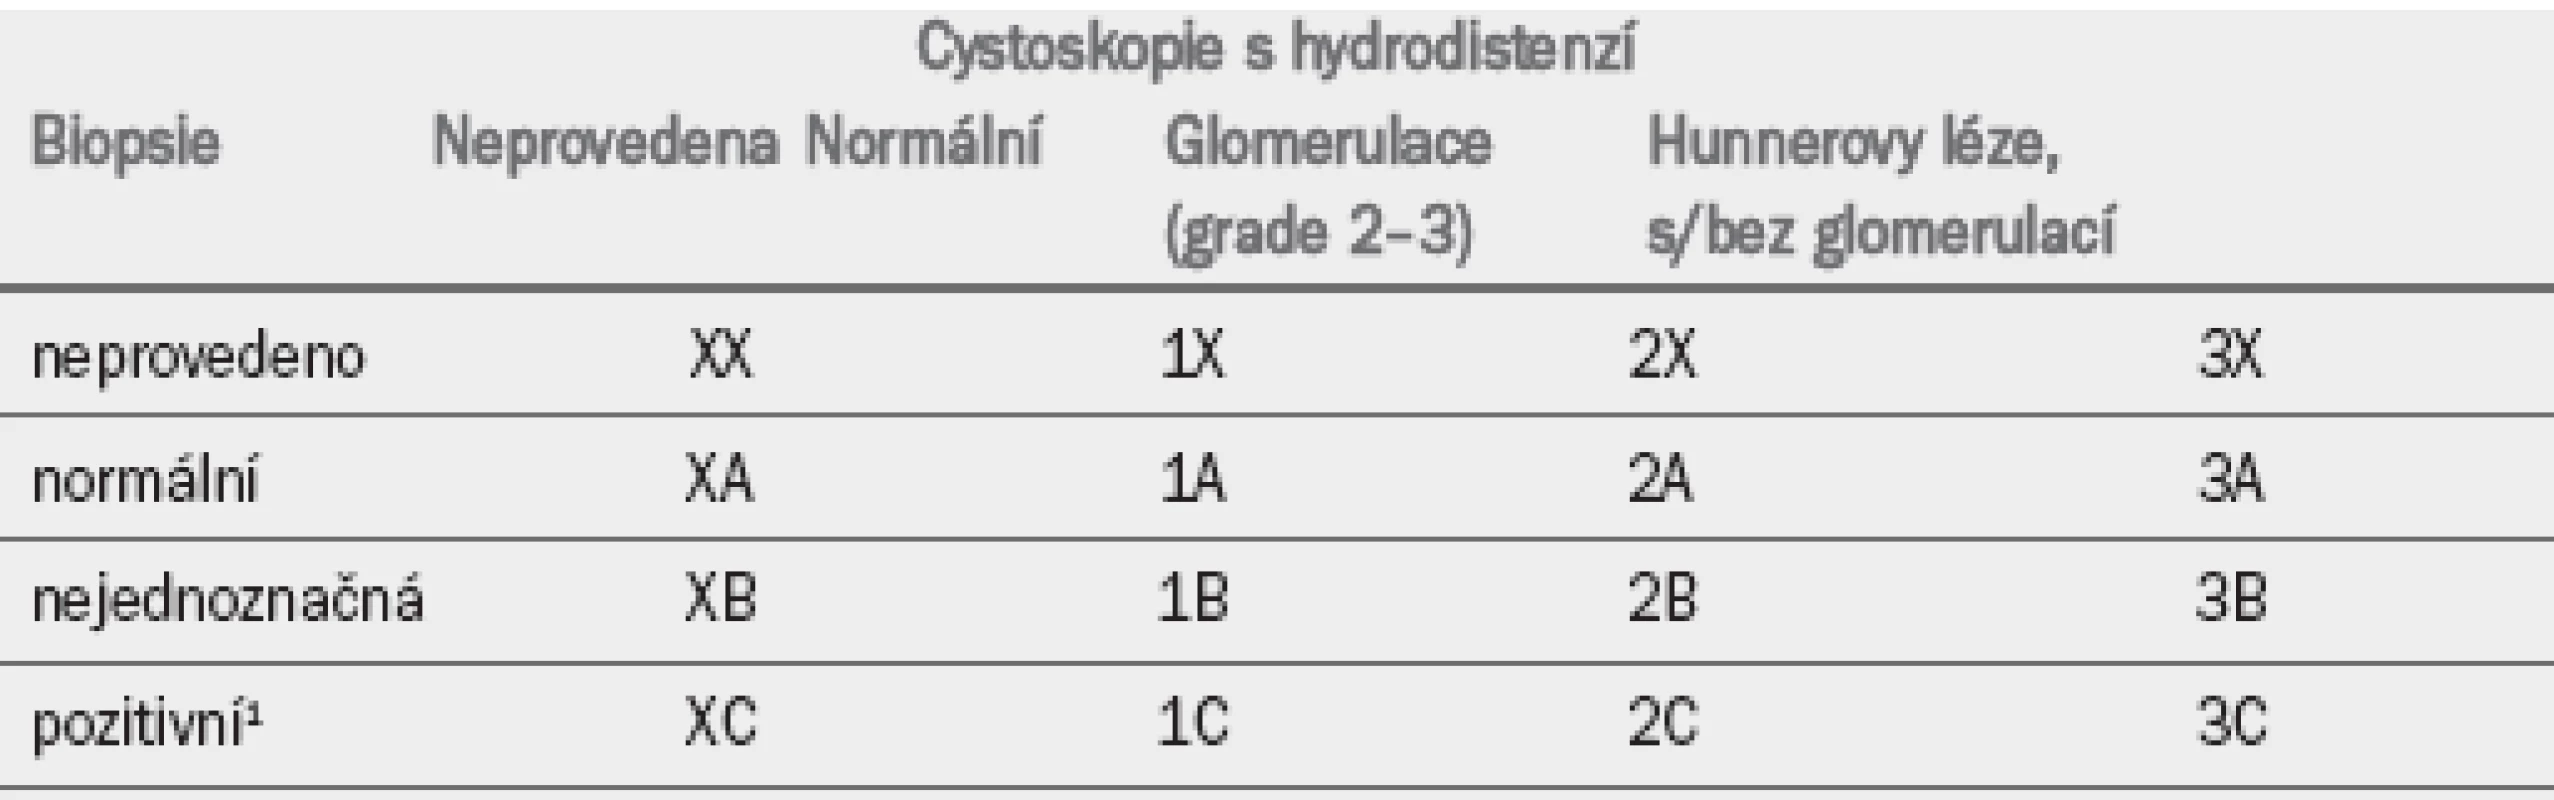 Klasifikace syndromu bolesti v oblasti močového měchýře na základě cystoskopie s hydrodistenzí a biopsie* (podle Evropské společnosti pro studium IC/PBS).